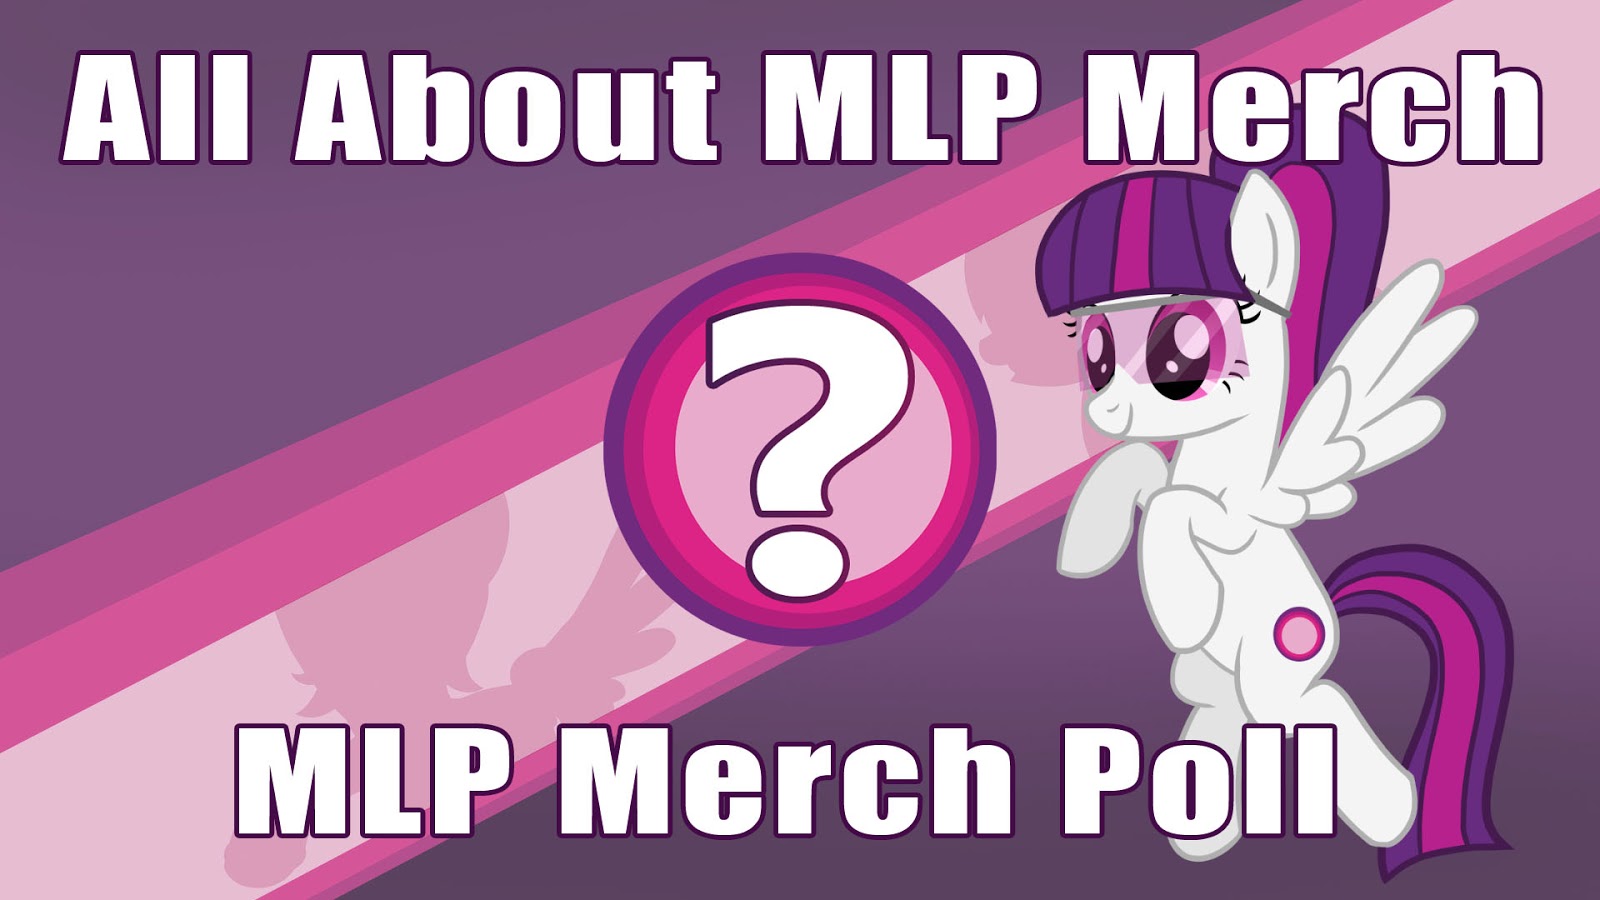 MLP Merch Poll